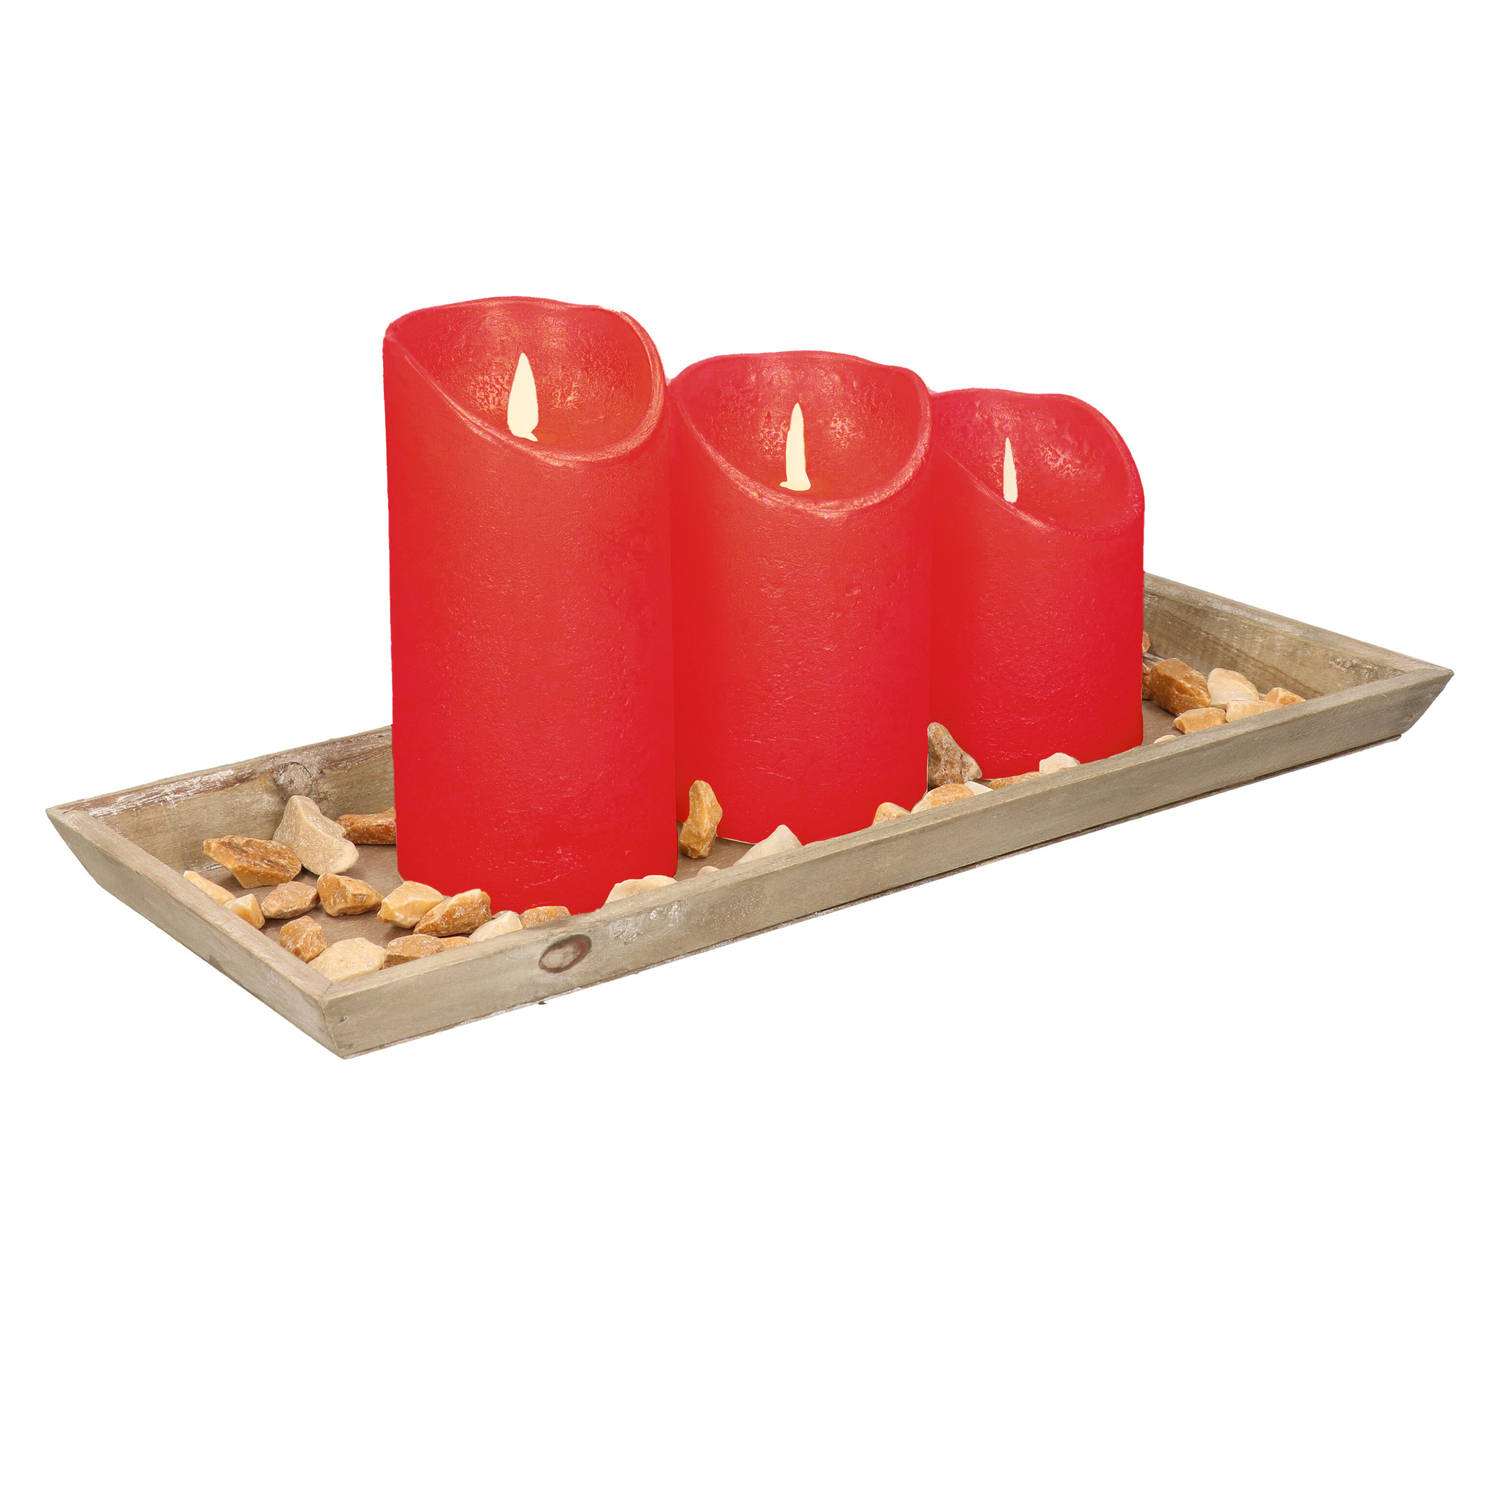 Dienblad Van Hout Met 3 Led Kaarsen In De Kleur Rood 39 X 15 Cm Led Kaarsen